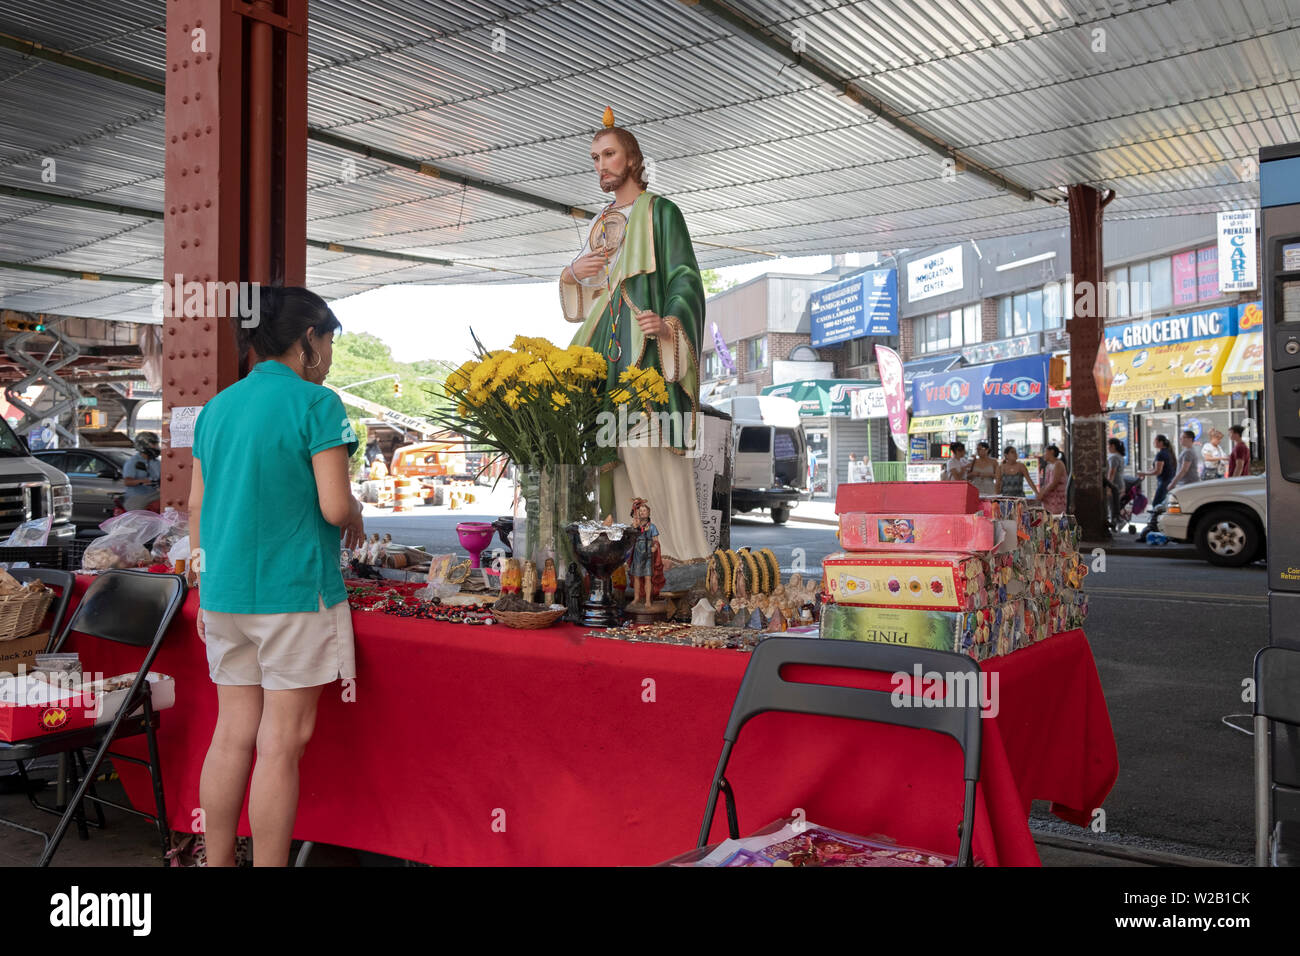 Una donna si ferma a fare acquisti in un stand esterno che vende articoli religiosi. A Roosevelt Ave. sotto la metropolitana sopraelevata in Elmhurst, Queens, a New York. Foto Stock